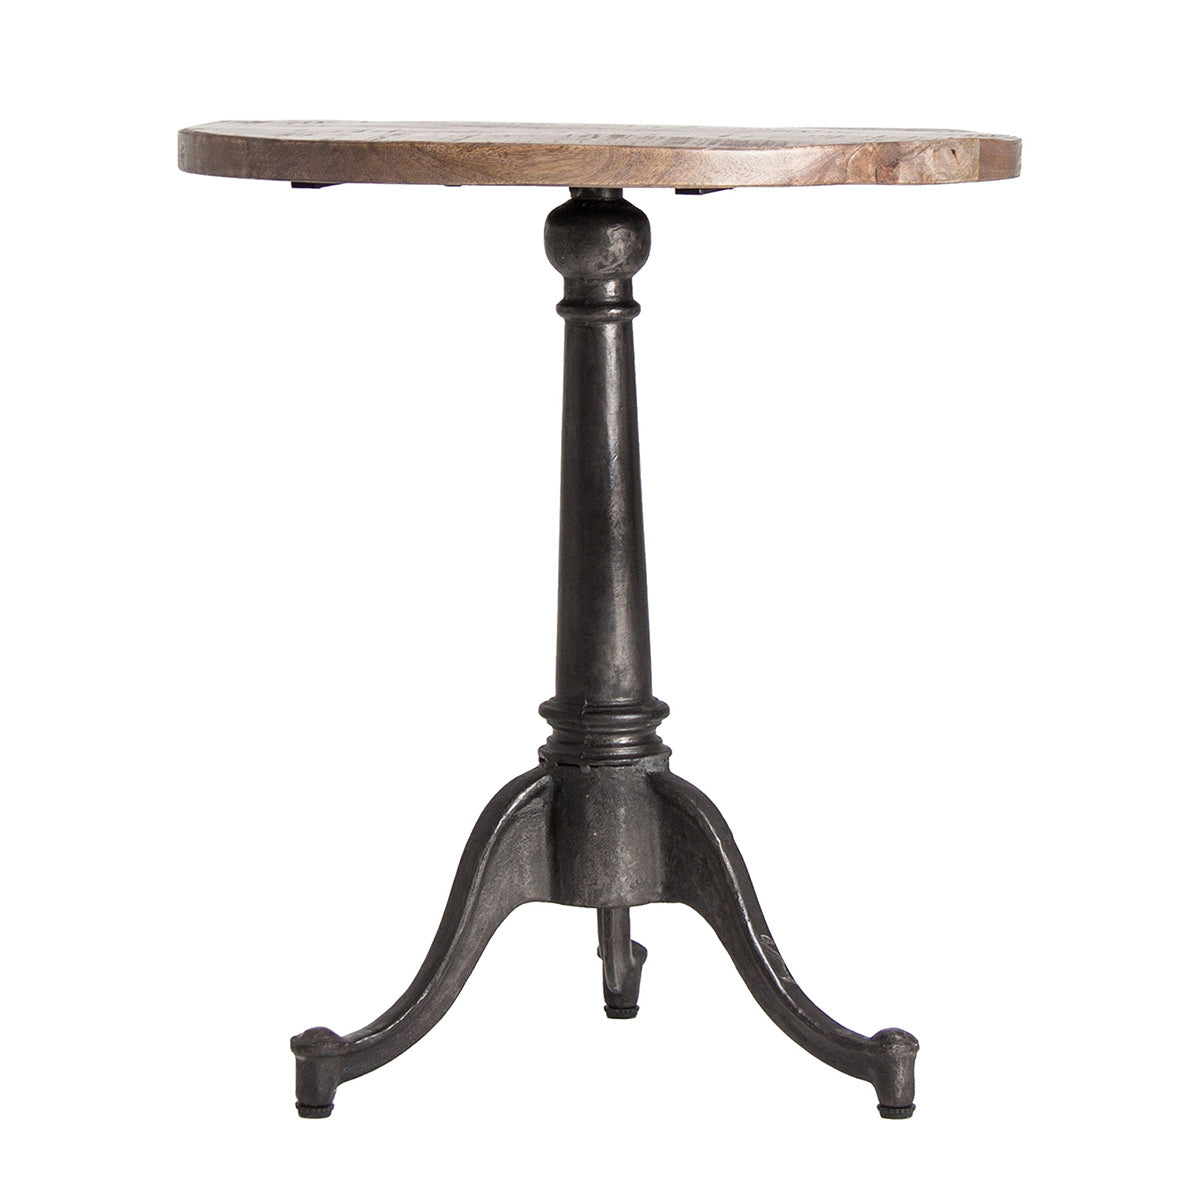 Ipari stílusú, fémből készült bárasztal állítható magasságú mangófa asztallappal.